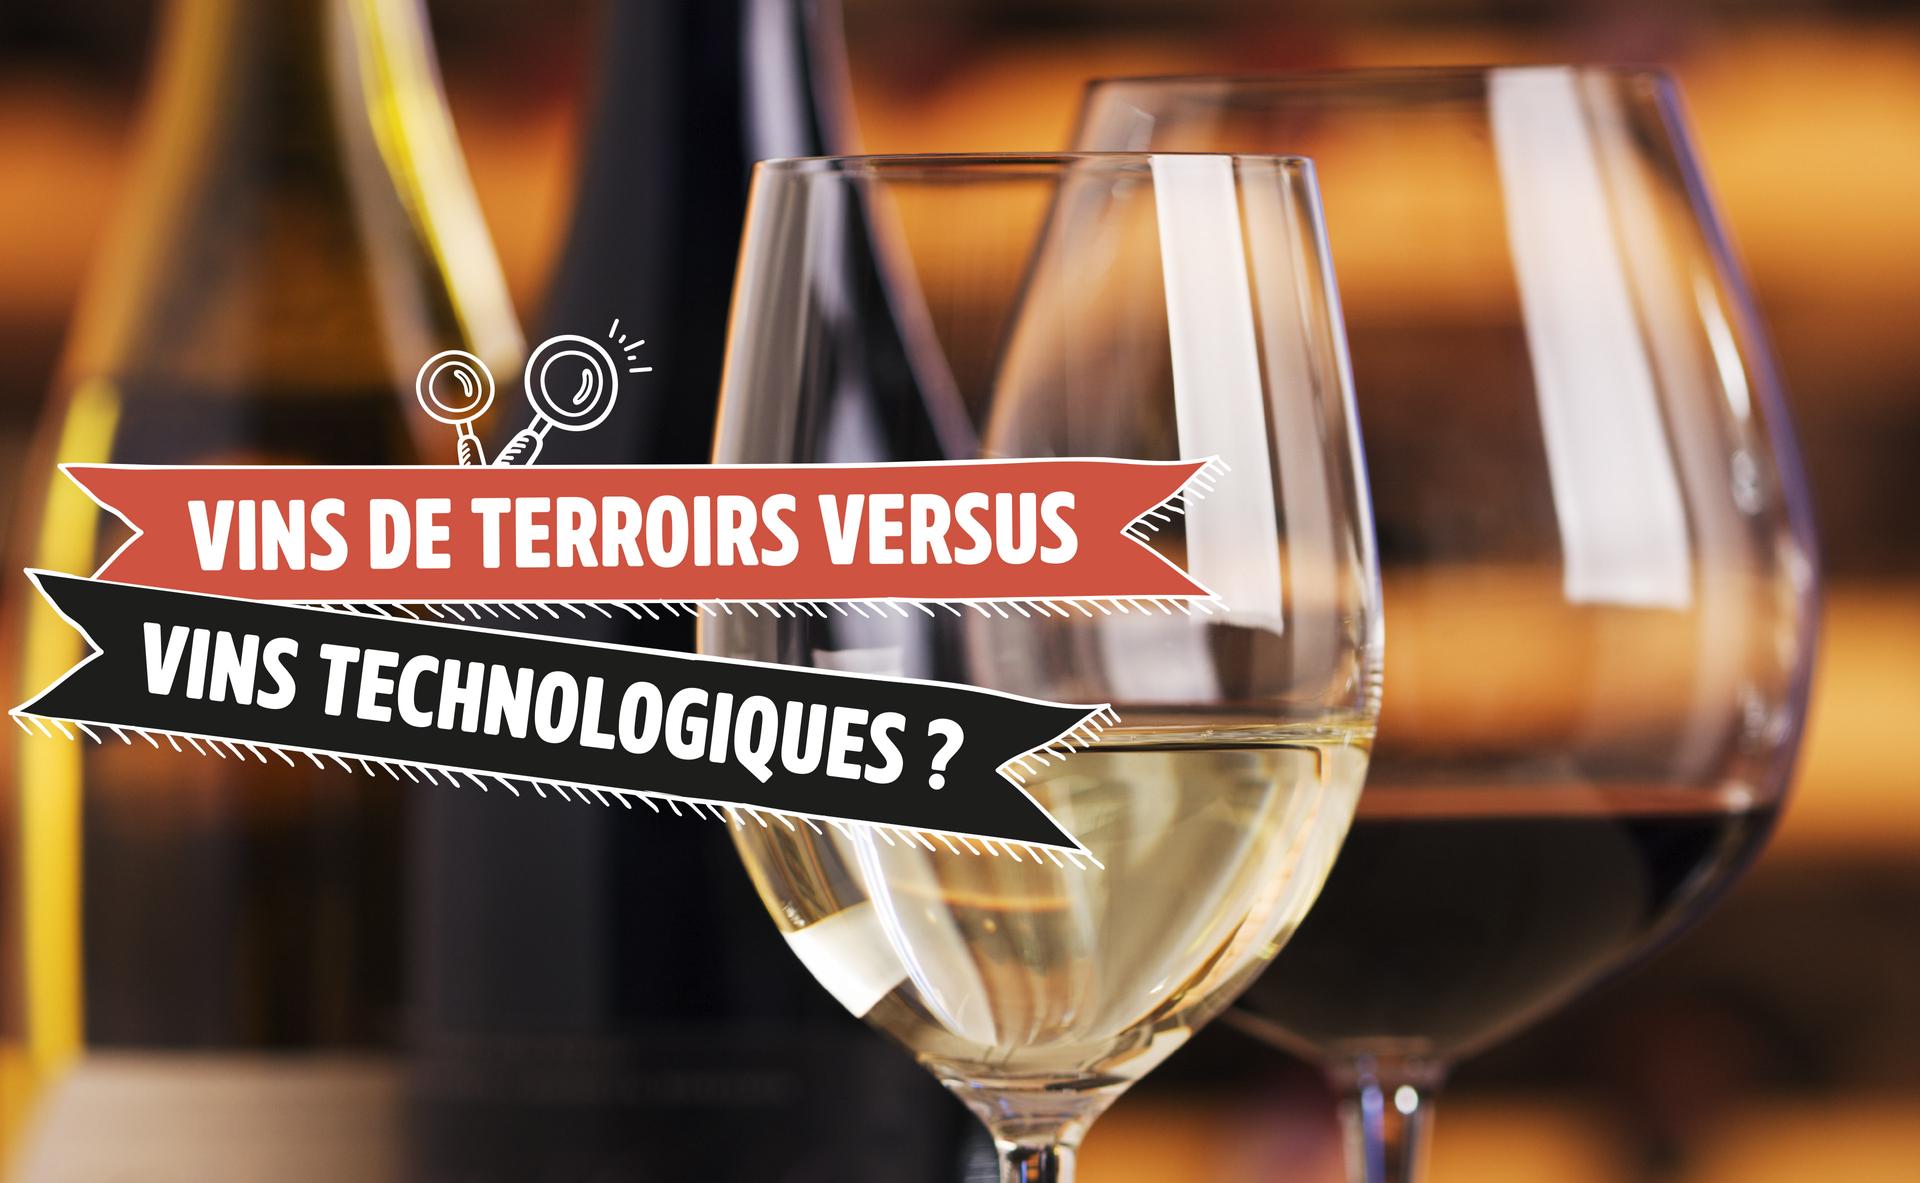 Vins de terroirs versus vins technologiques ?